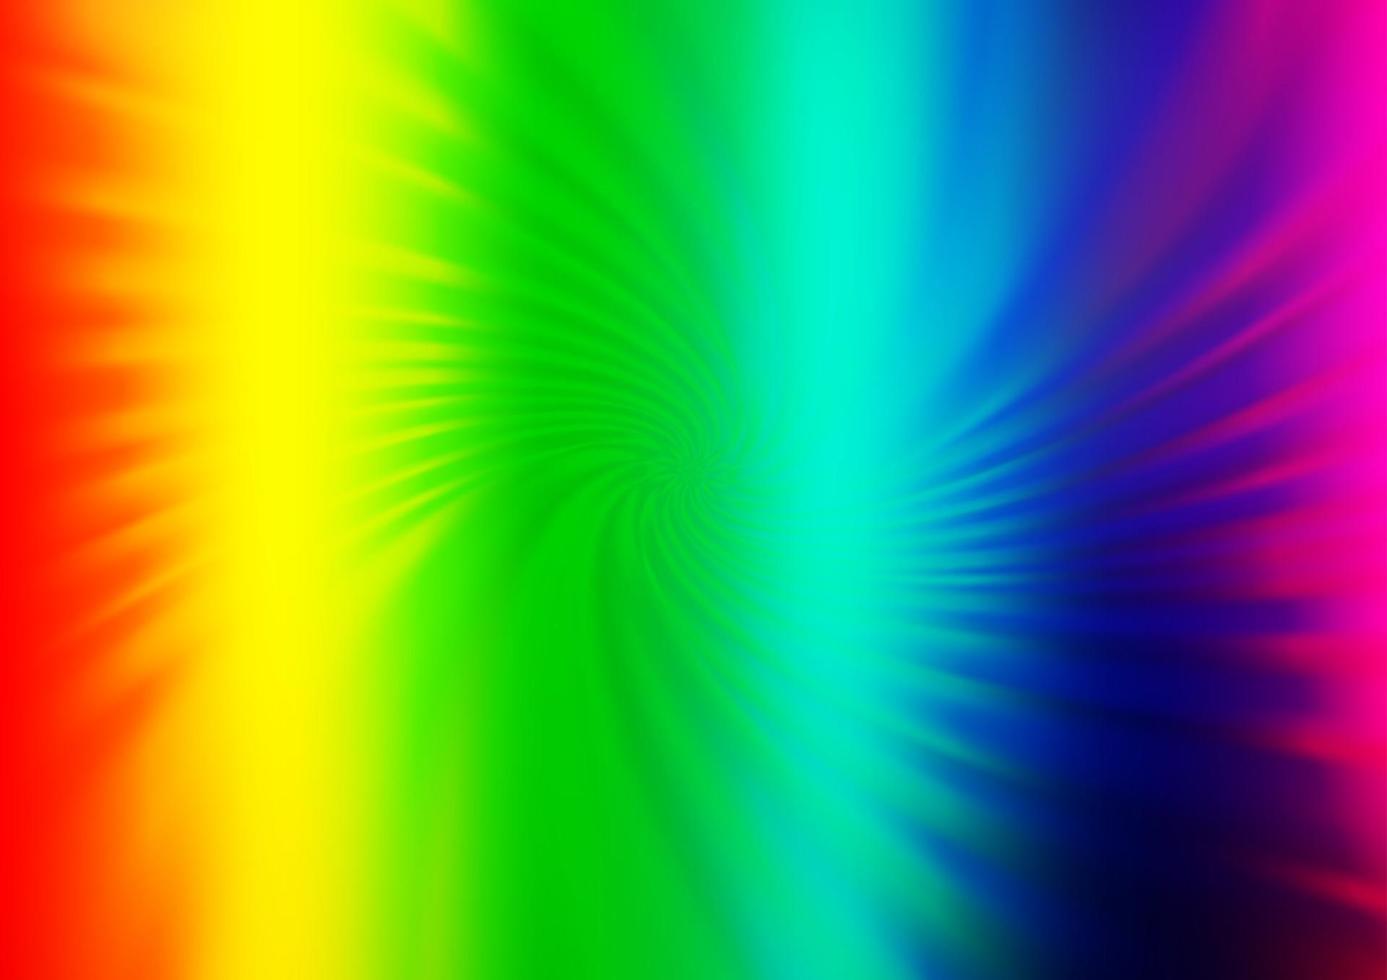 ljus mångfärgad, regnbåge vektor abstrakt suddig bakgrund.